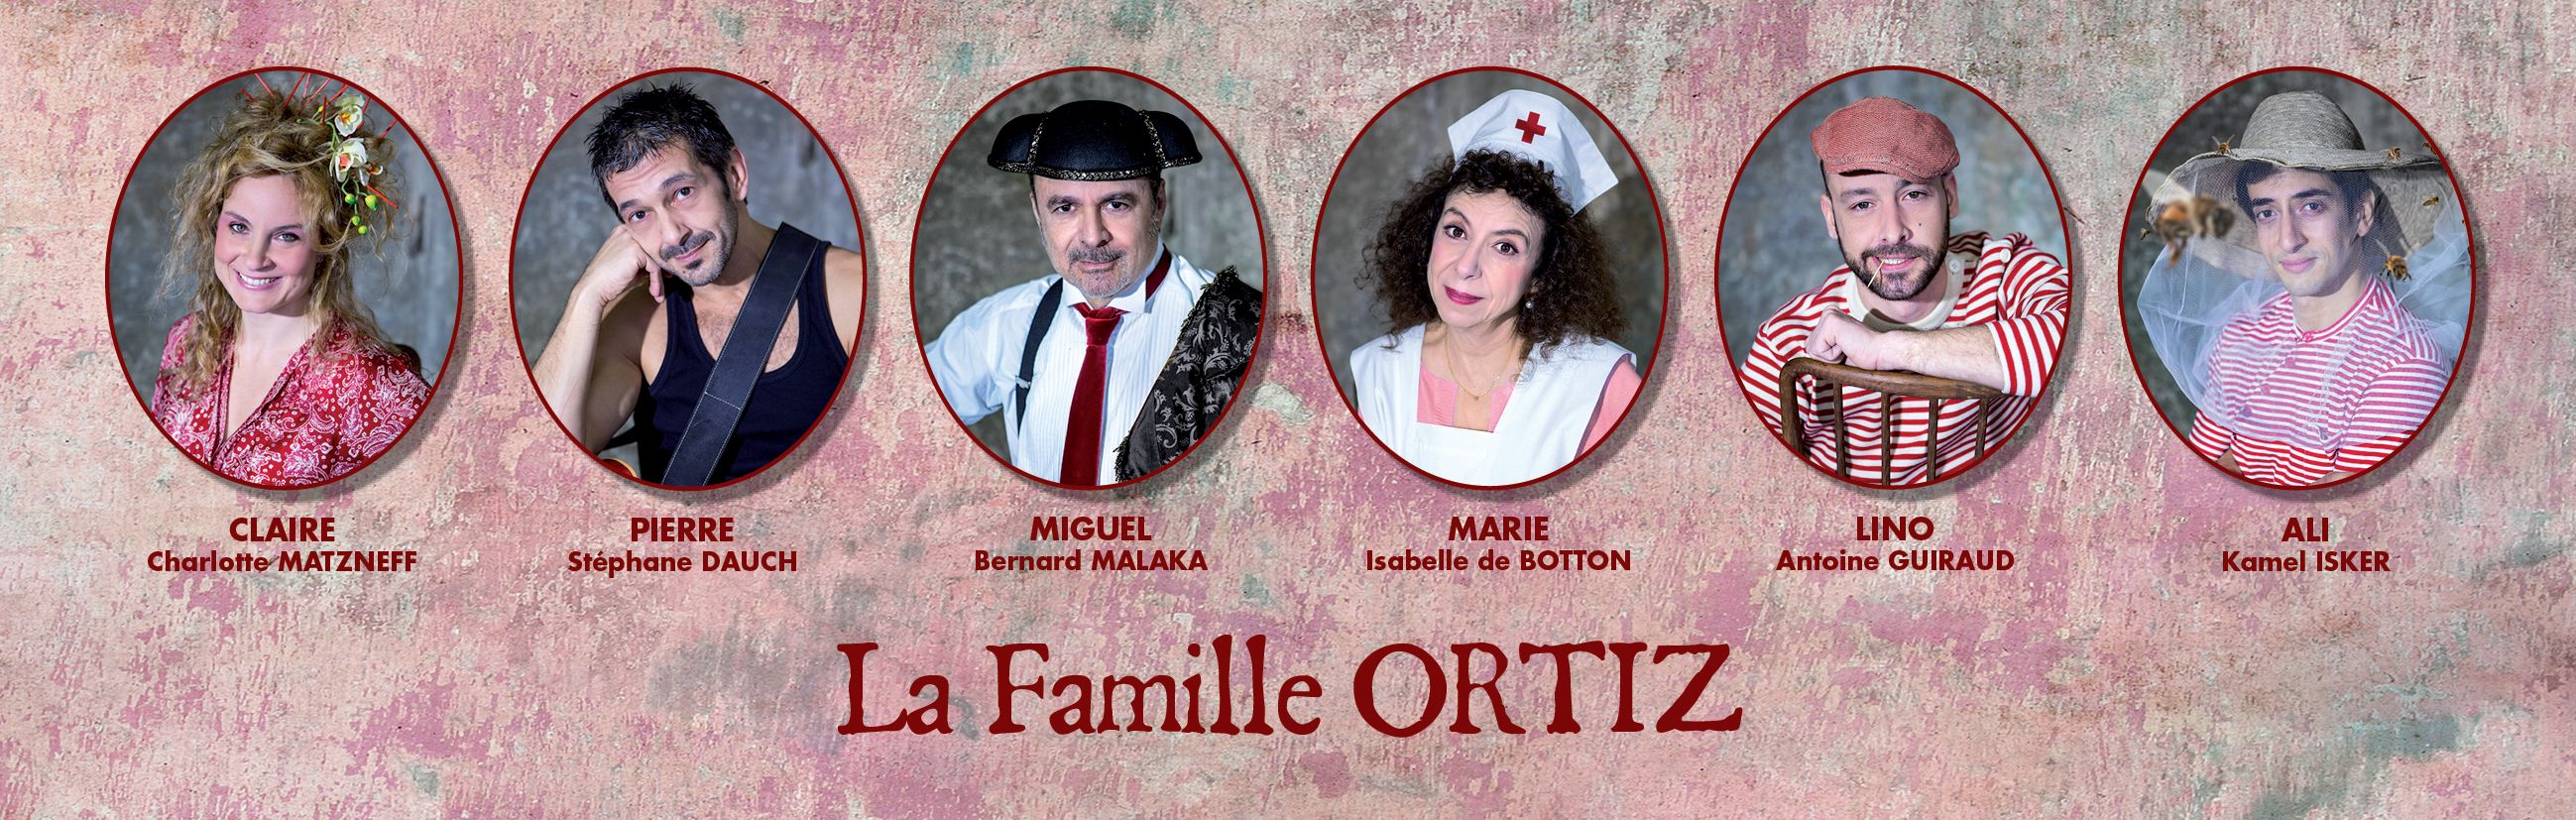 LA FAMILLE ORTIZ (Théâtre Rive Gauche-Paris 14ème) - Bande annonce on Vimeo